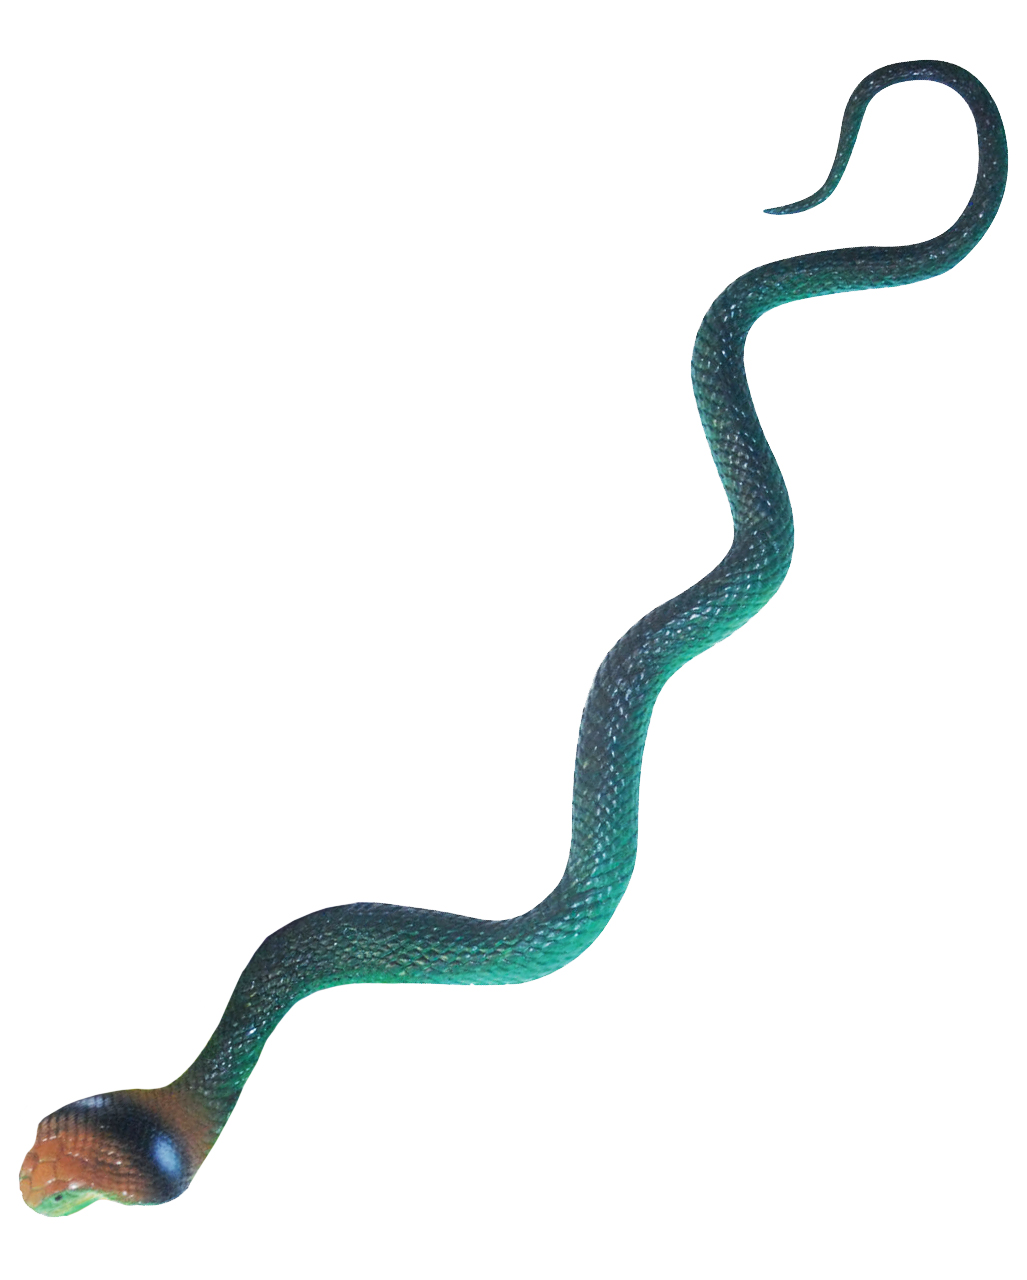 Kobra Schlange grün   Realistische Gummischlange